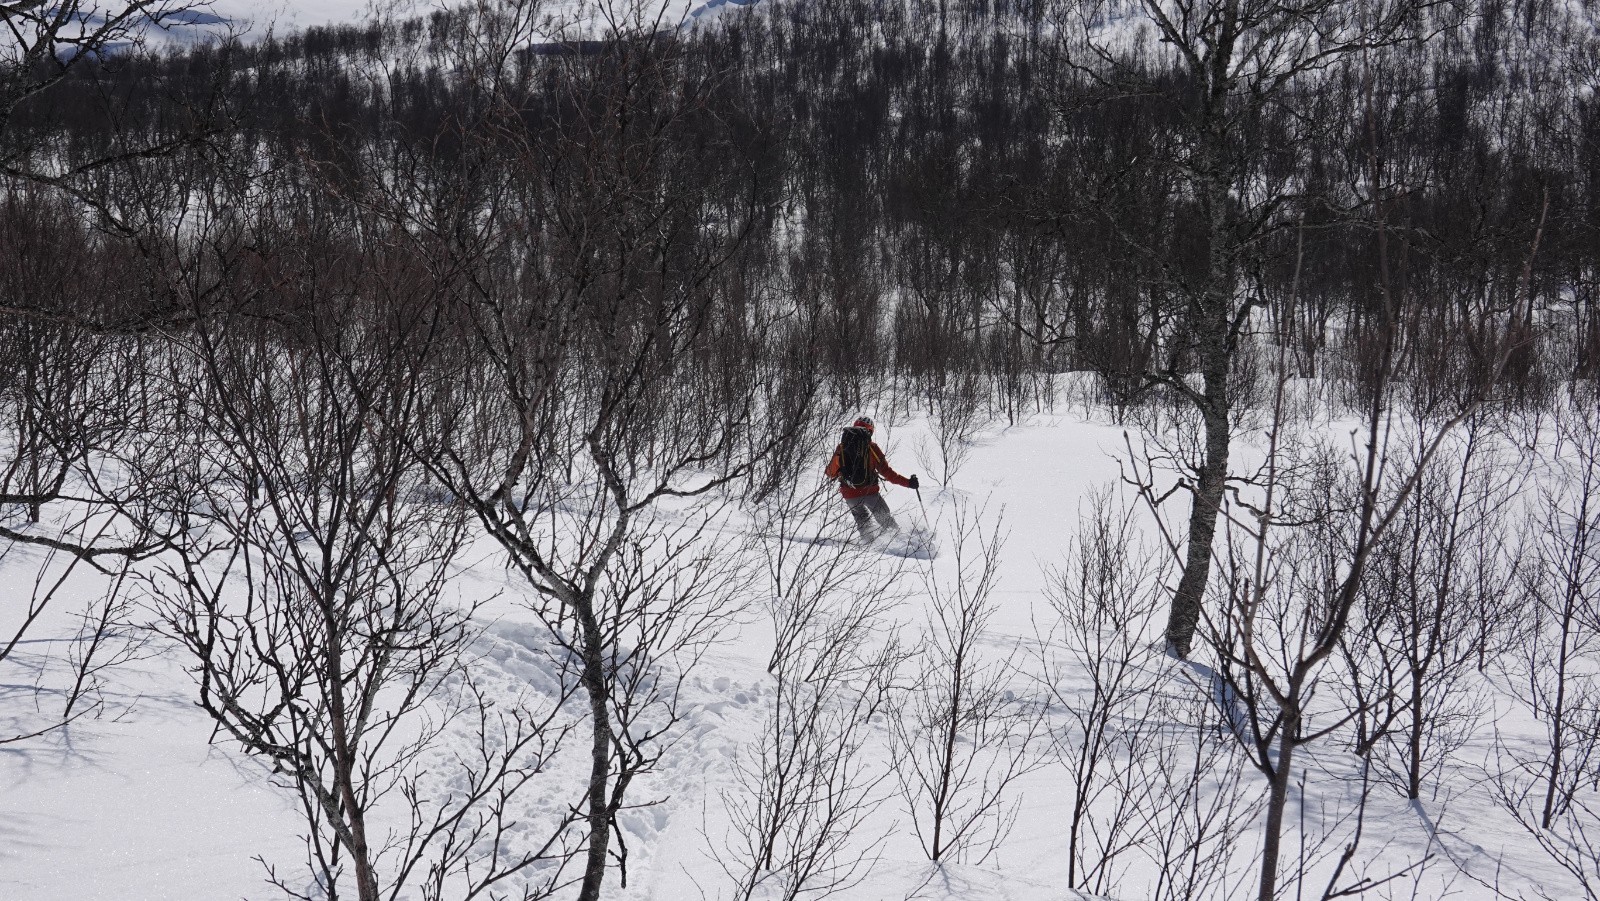 Ski excellent dans ce bois pas trop dense